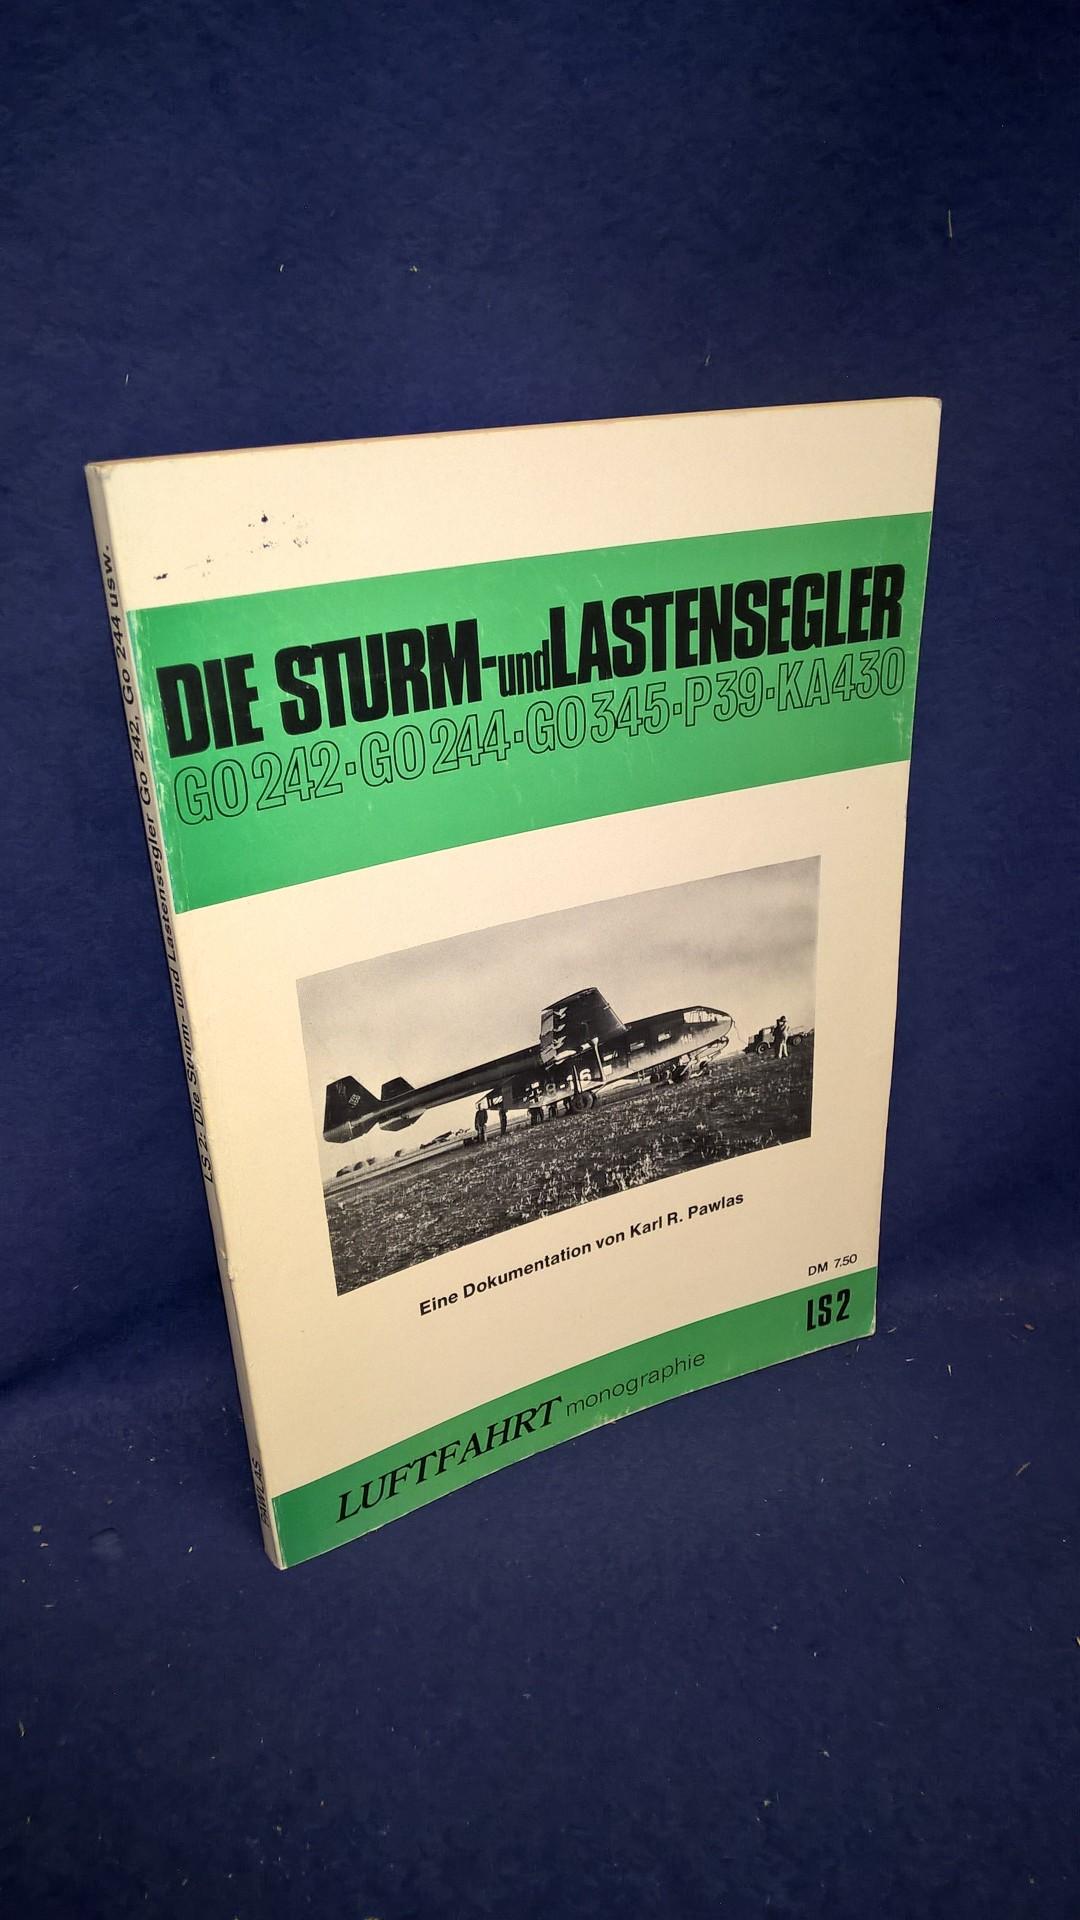 Die Sturm- und Lastensegler Go 242 / Go 244 / Go 345 / P 39 / Ka 430. Eine Dokumentation.